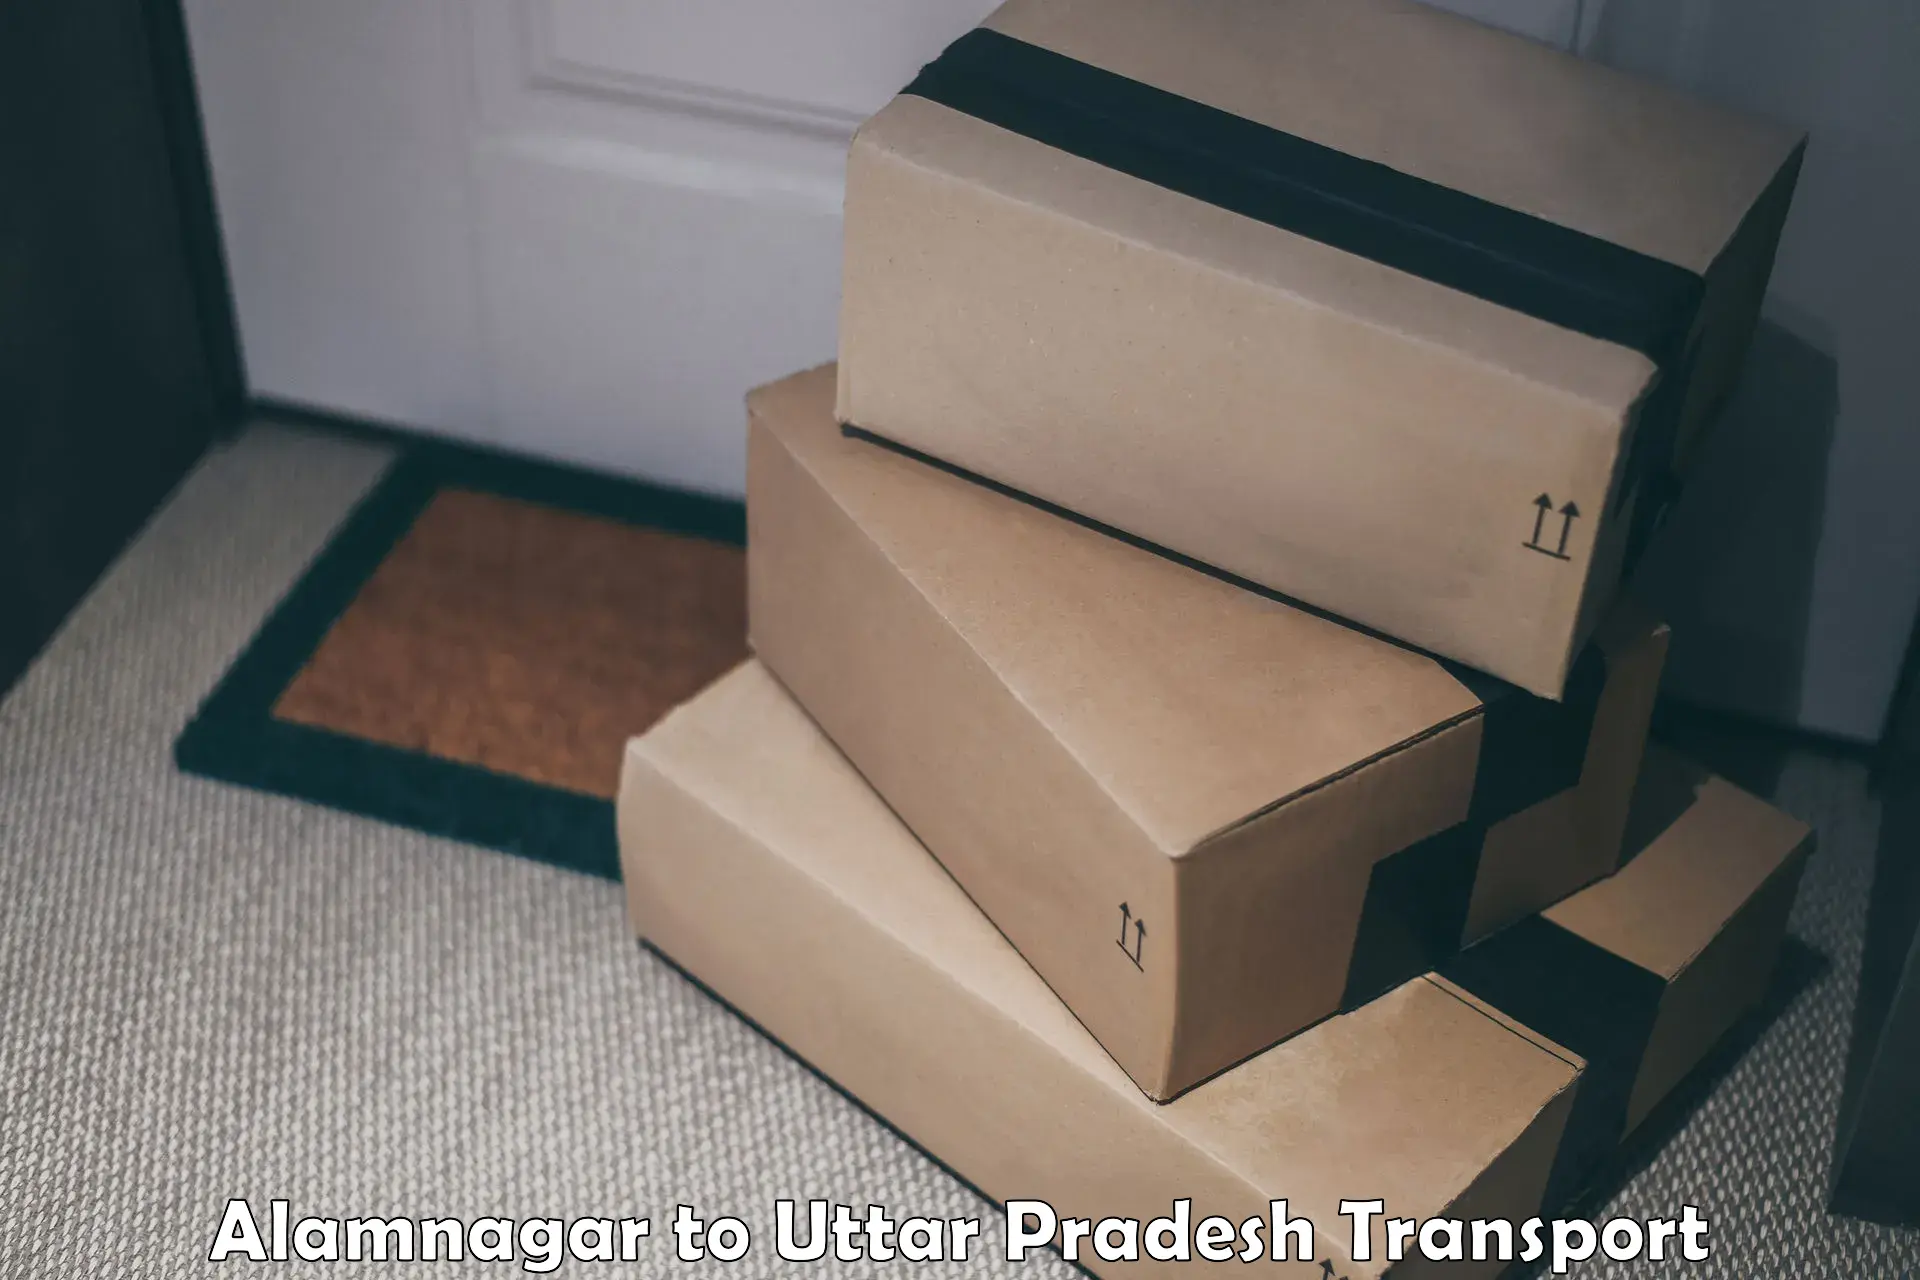 Vehicle courier services Alamnagar to Uttar Pradesh